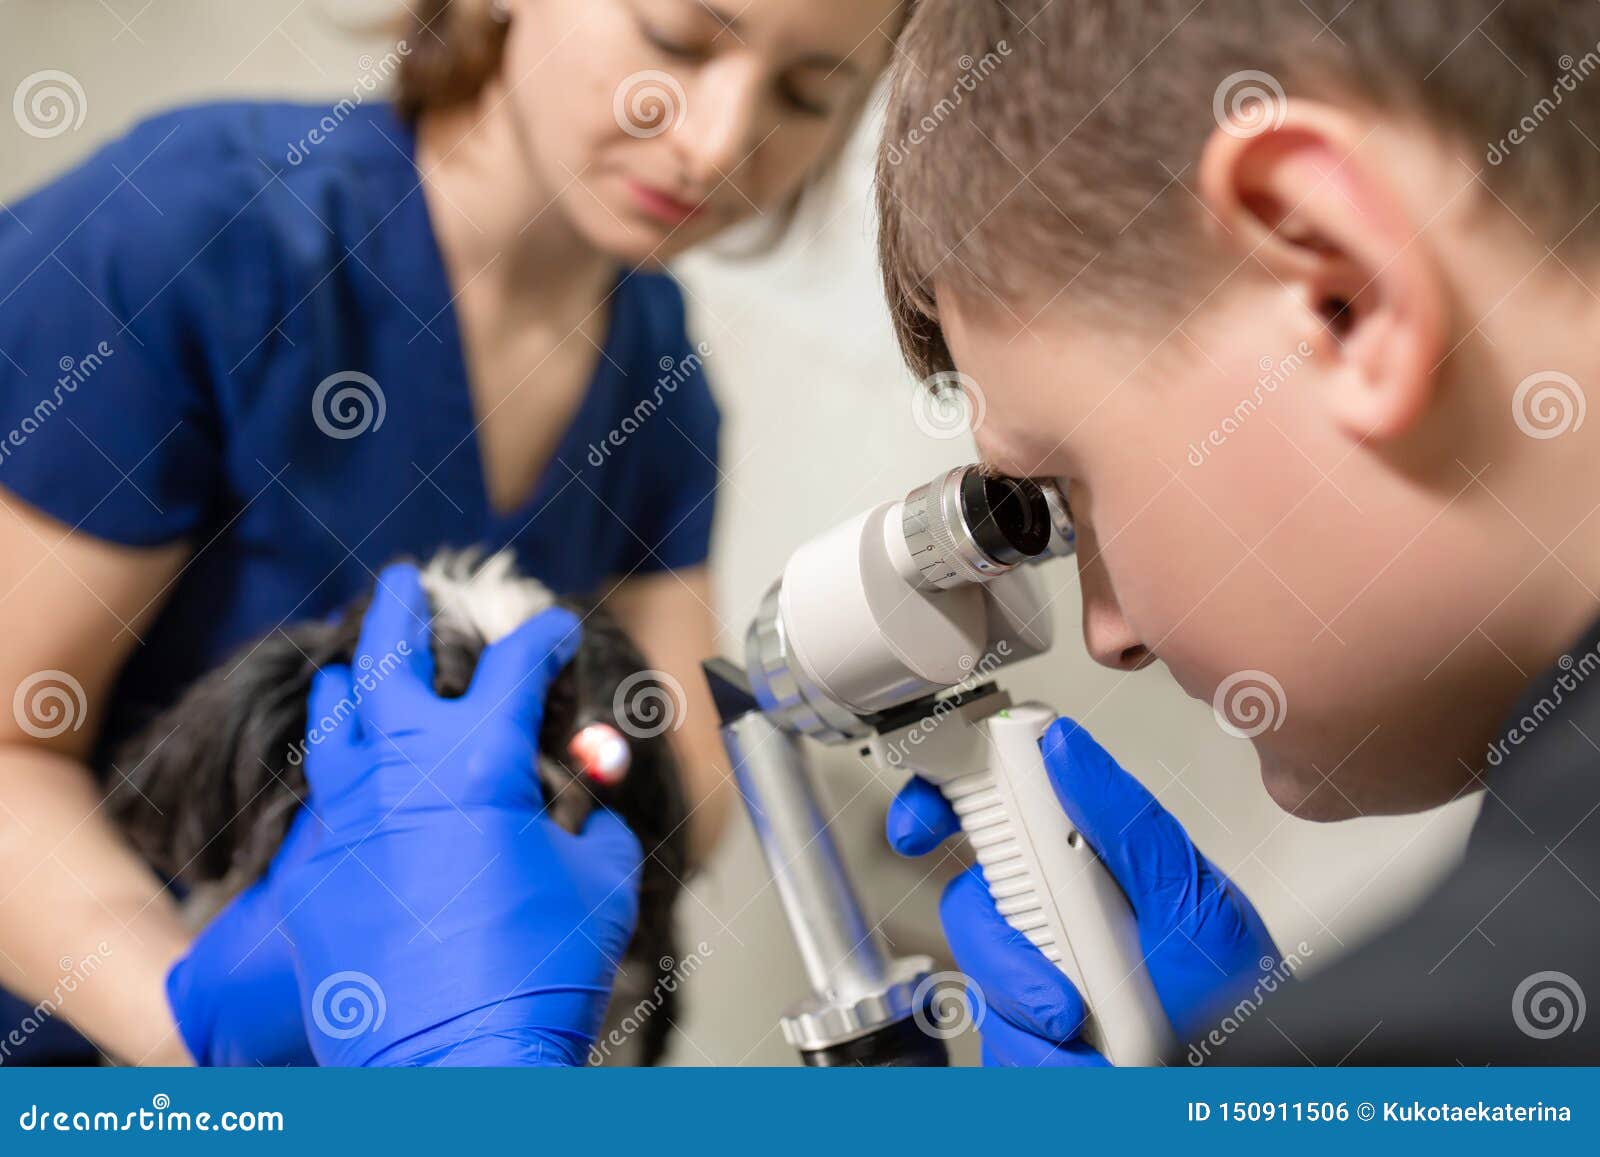 Veterinari, gli oftalmologi esaminano l'occhio ferito di un cane con una lampada a fessura in una clinica veterinaria